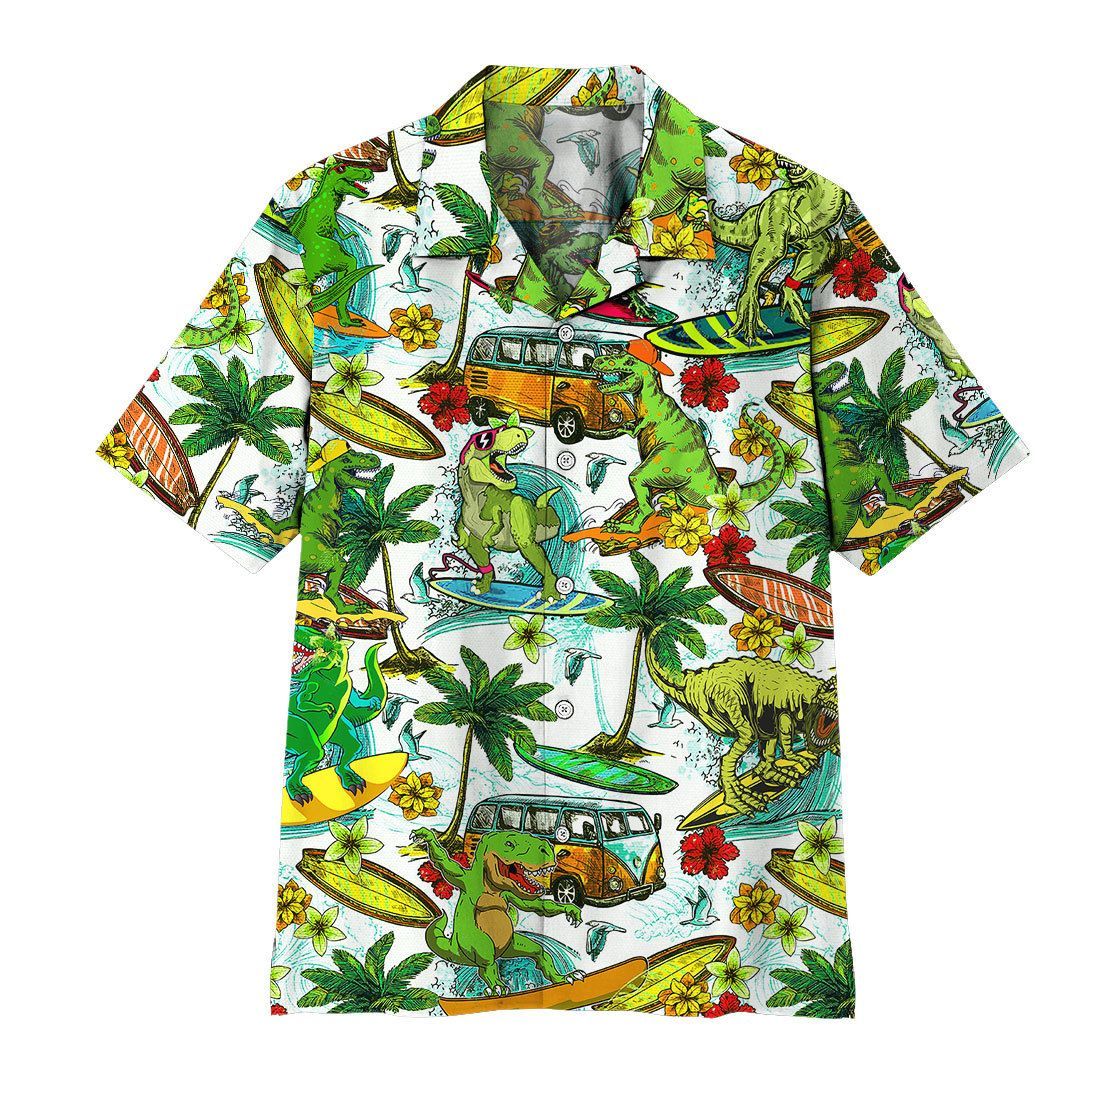 Gearhuman 3D Dinosaur Surfing Hawaii Shirt ZZ0707213 Short Sleeve Shirt Short Sleeve Shirt S 